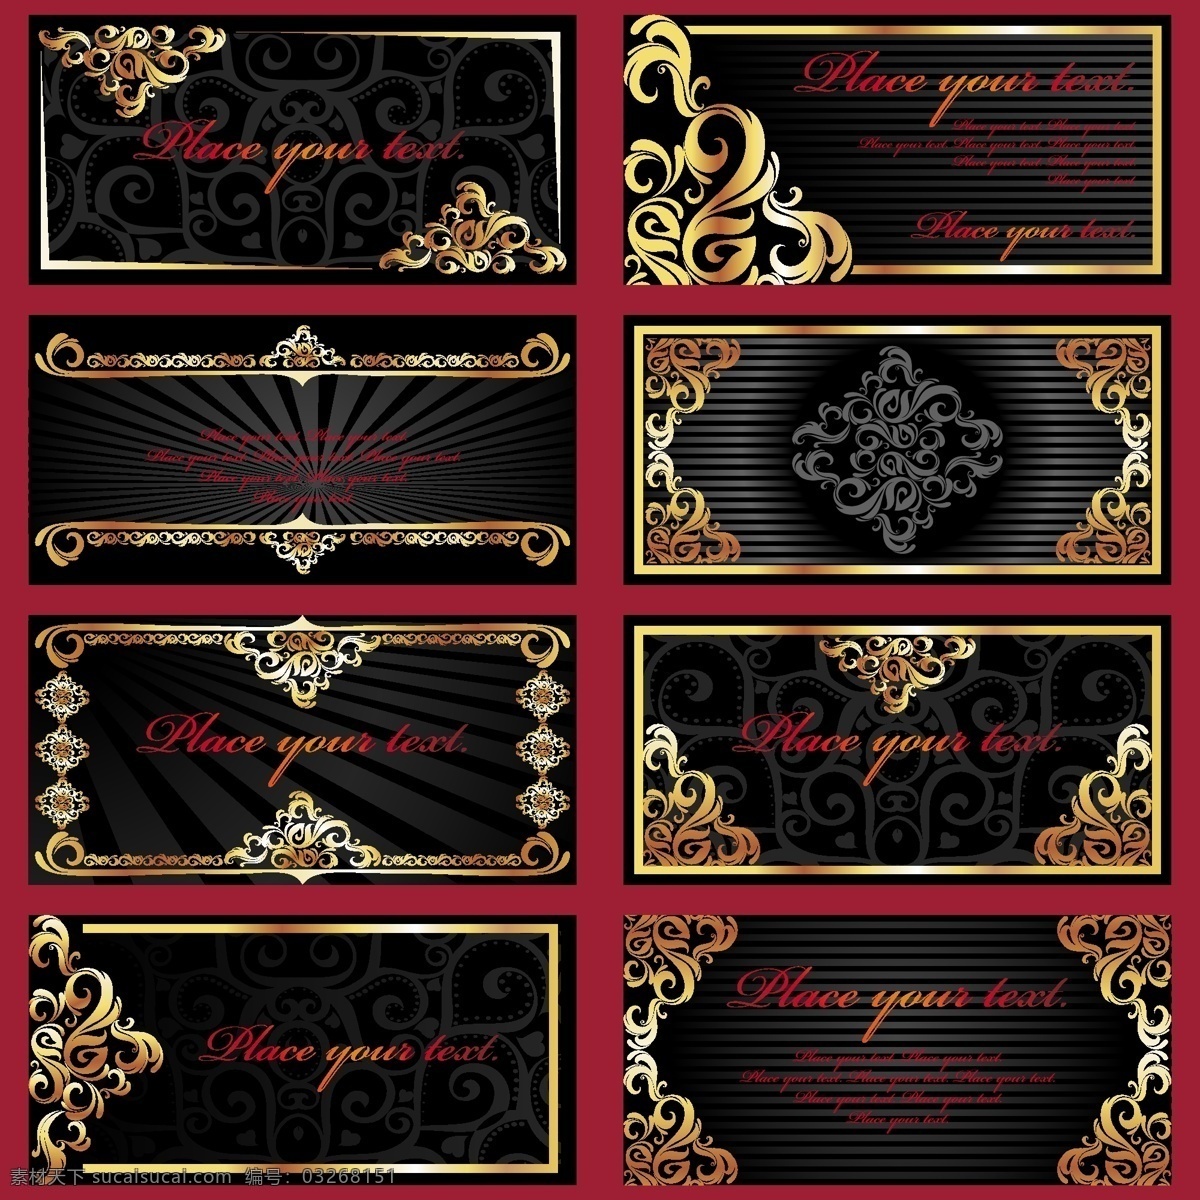 欧式花纹 欧式 欧式名片 名片 黑金 黑色 金色 华丽 古典 欧风 名片卡片